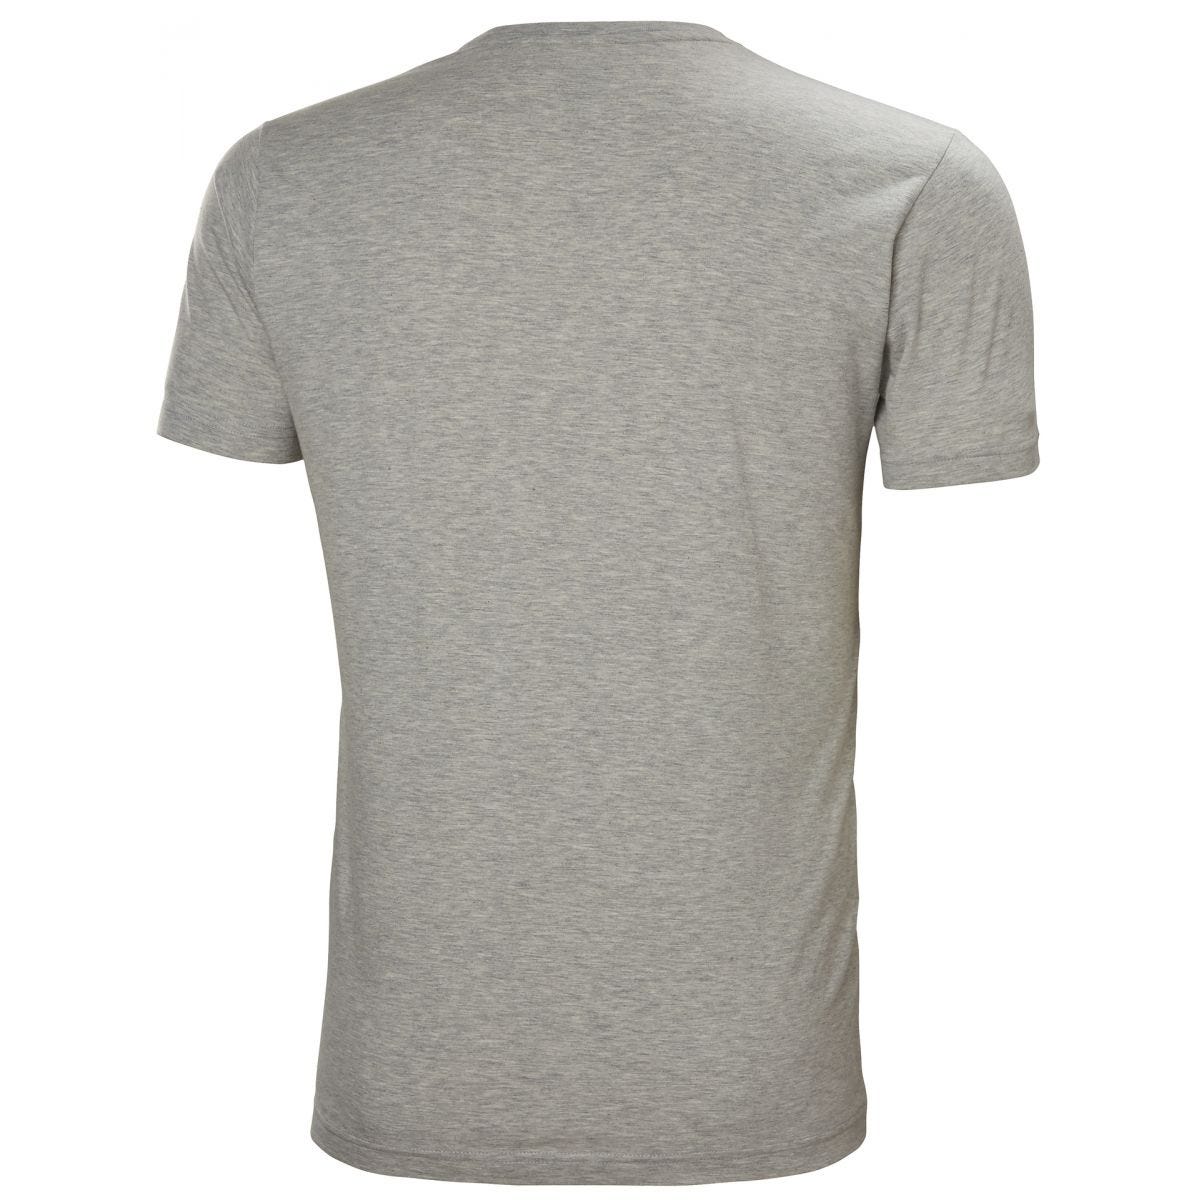 Tee-shirt Kensington Gris/Camo - Helly Hansen - Taille S 1